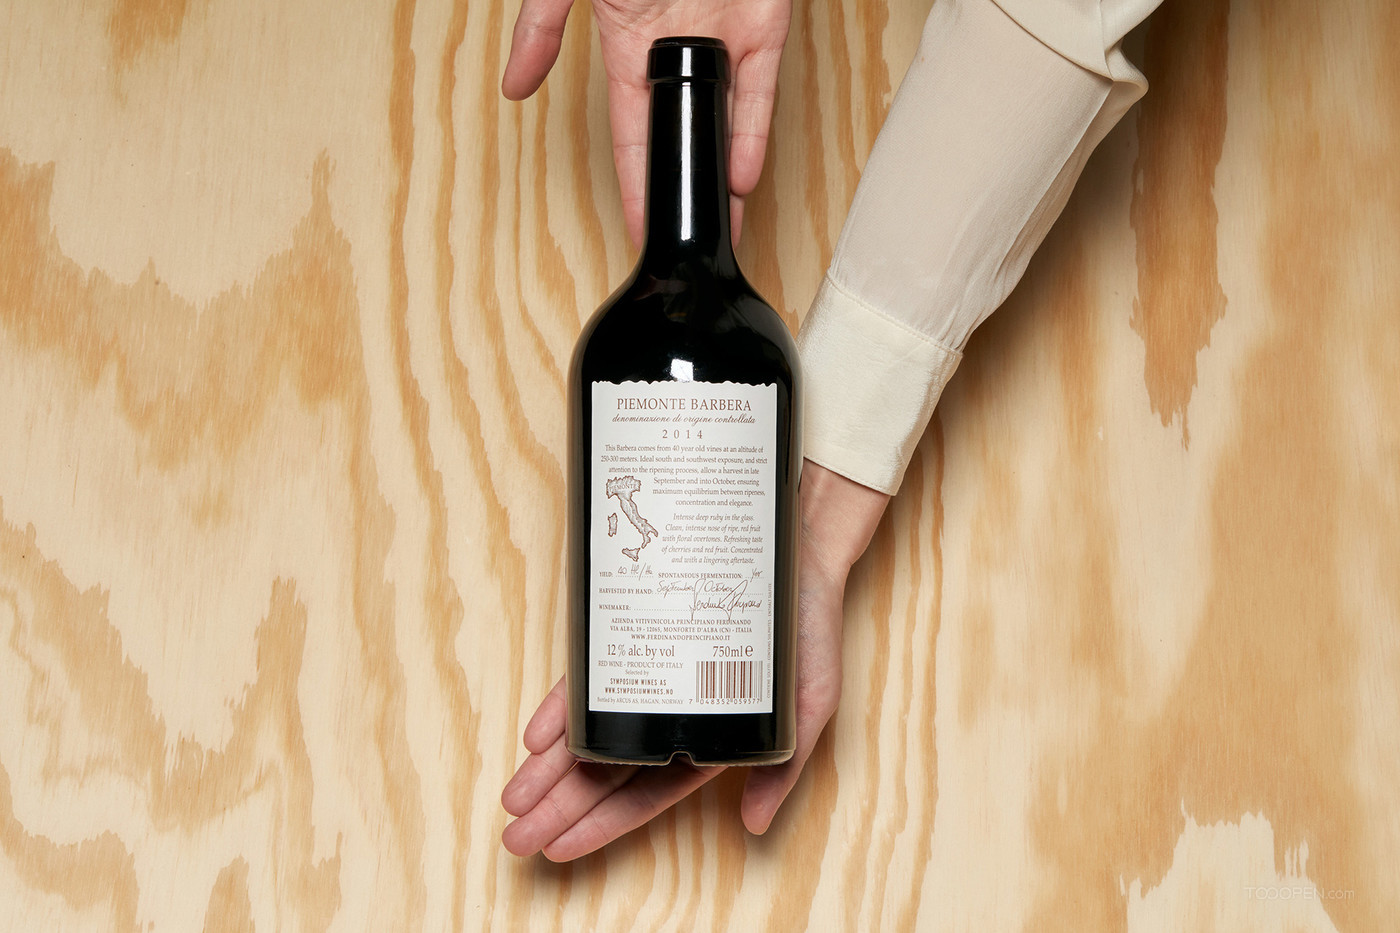 12世纪家族酒坊高端葡萄酒古典包装设计图片欣赏-03